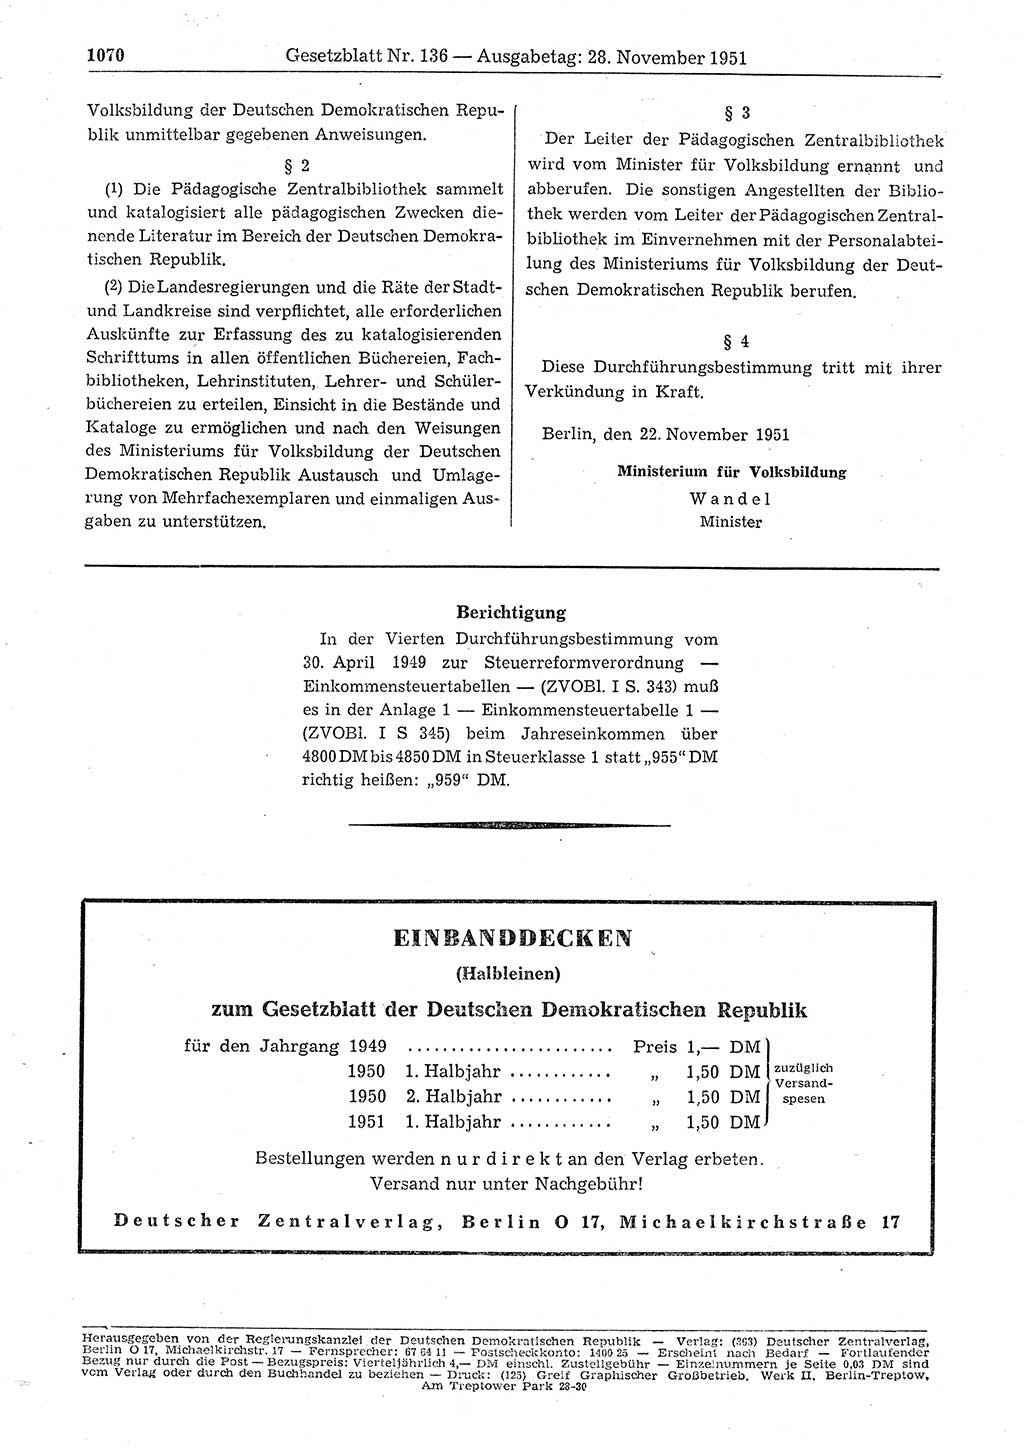 Gesetzblatt (GBl.) der Deutschen Demokratischen Republik (DDR) 1951, Seite 1070 (GBl. DDR 1951, S. 1070)